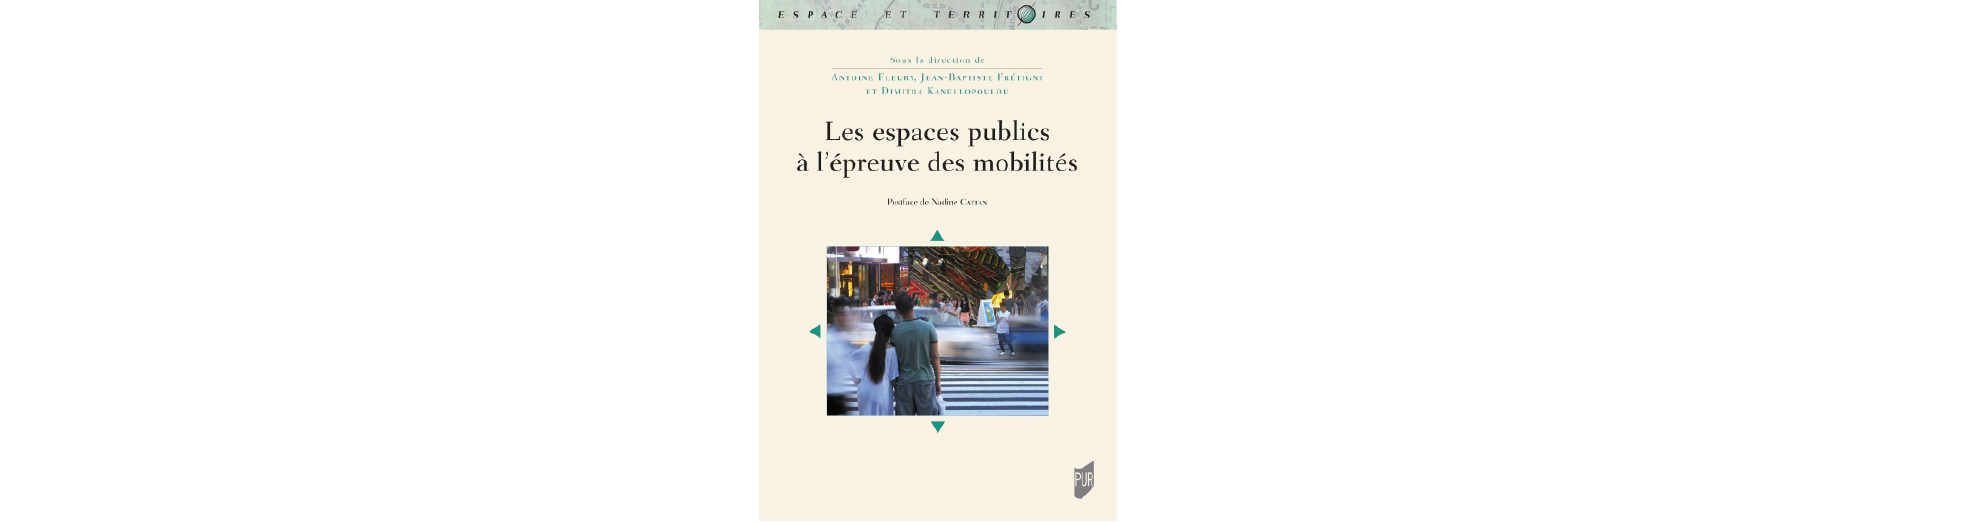 Parution - Les espaces publics à l'épreuve des mobilités